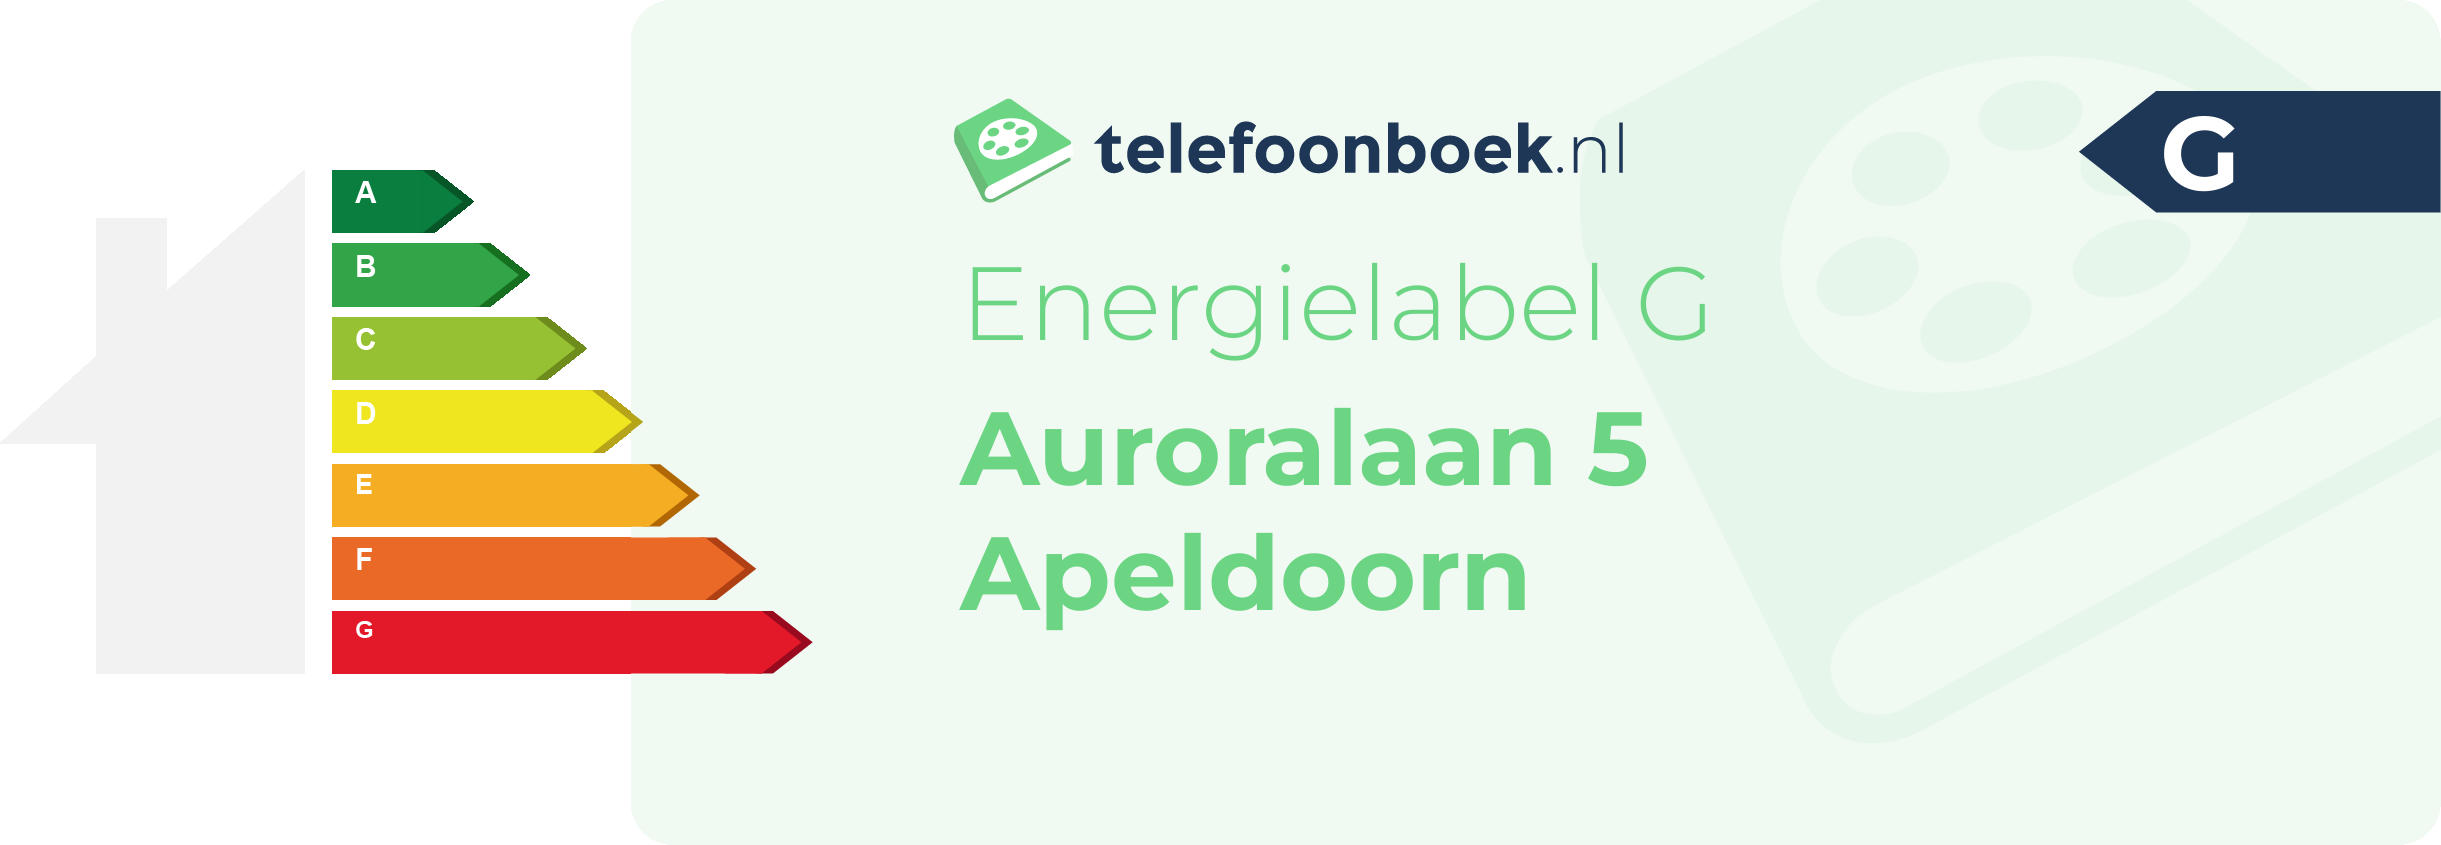 Energielabel Auroralaan 5 Apeldoorn